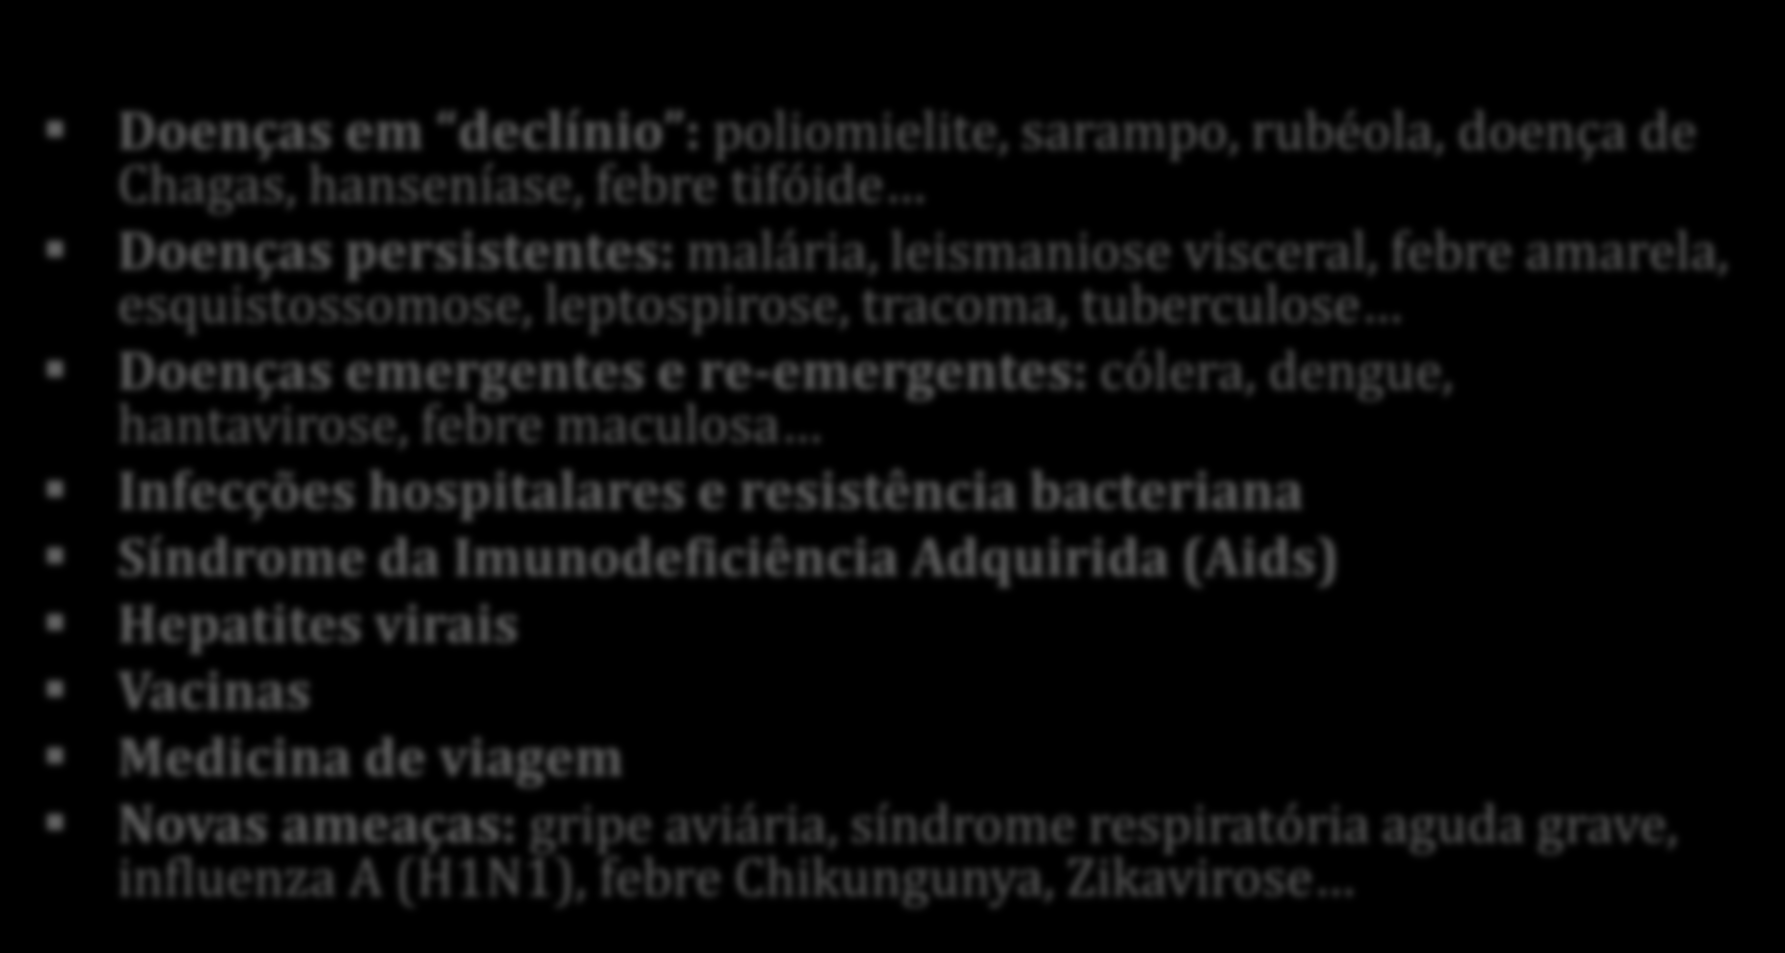 A Infectologia na Atualidade: O Desafio Doenças em declínio : poliomielite, sarampo, rubéola, doença de Chagas, hanseníase, febre tifóide Doenças persistentes: malária, leismaniose visceral, febre